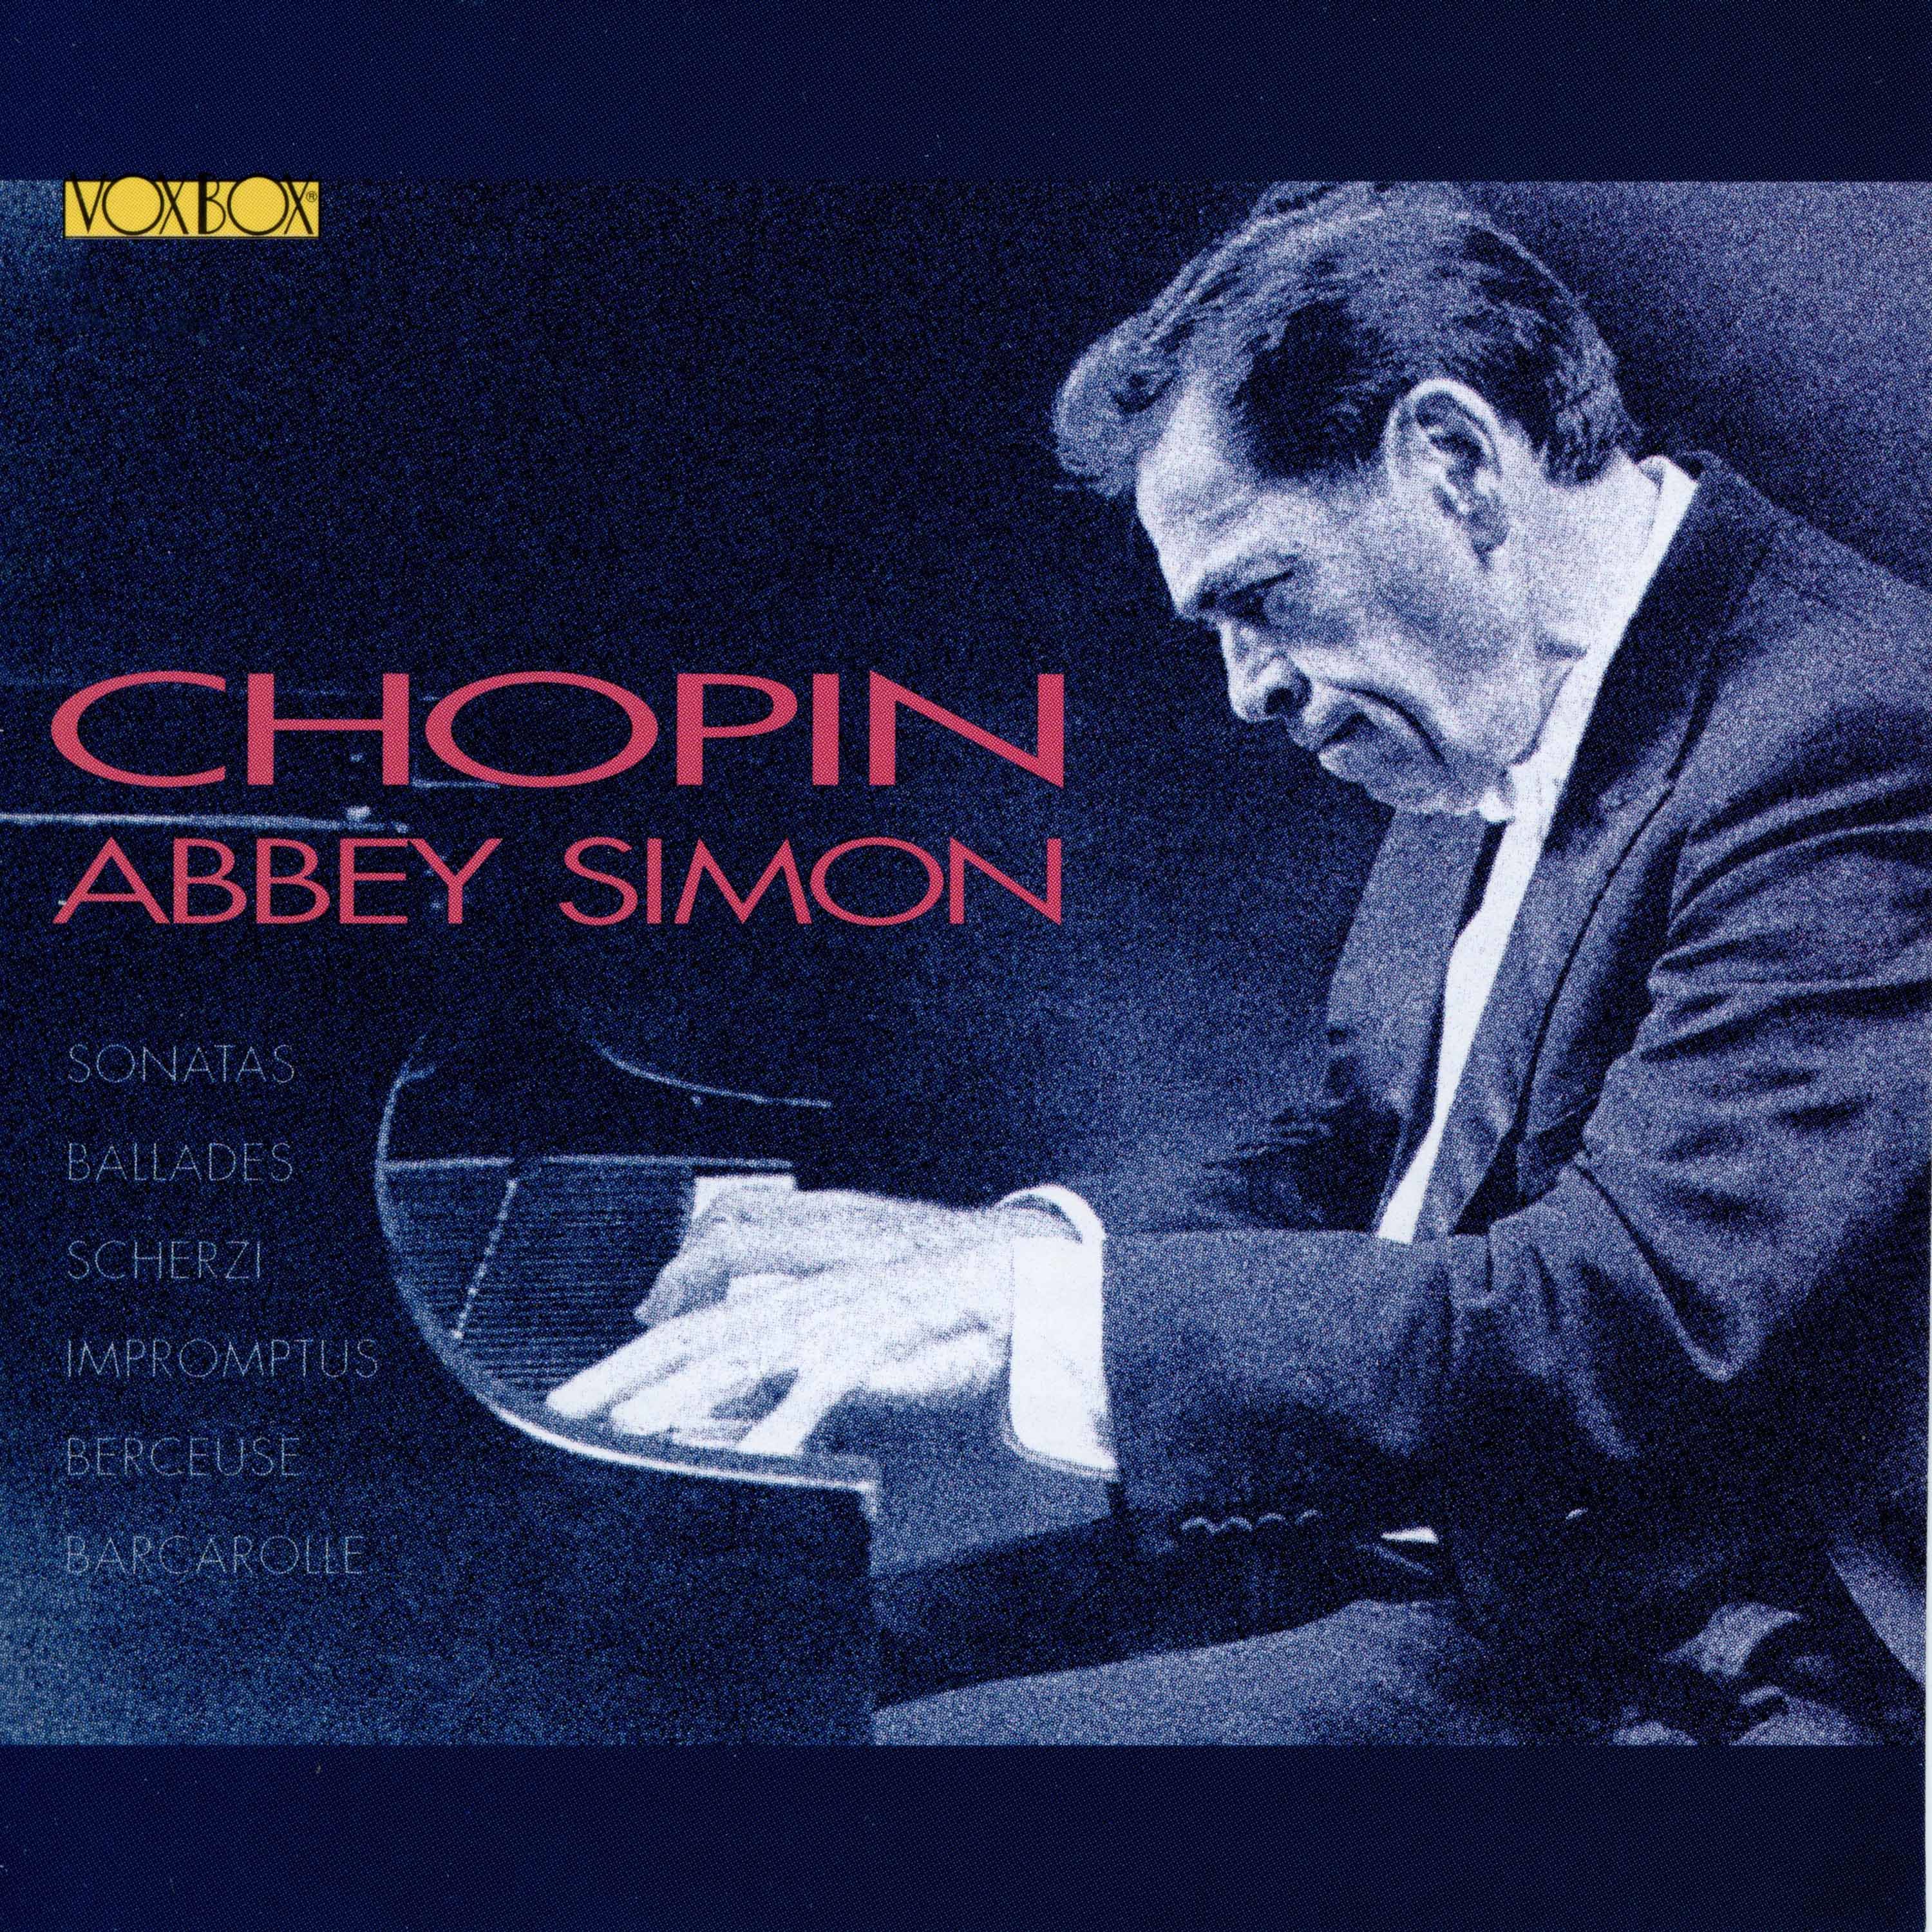 Abbey Simon - Chopin Sonatas Scherzos Ballades Impromptus Berceuse Barcarolle cd02